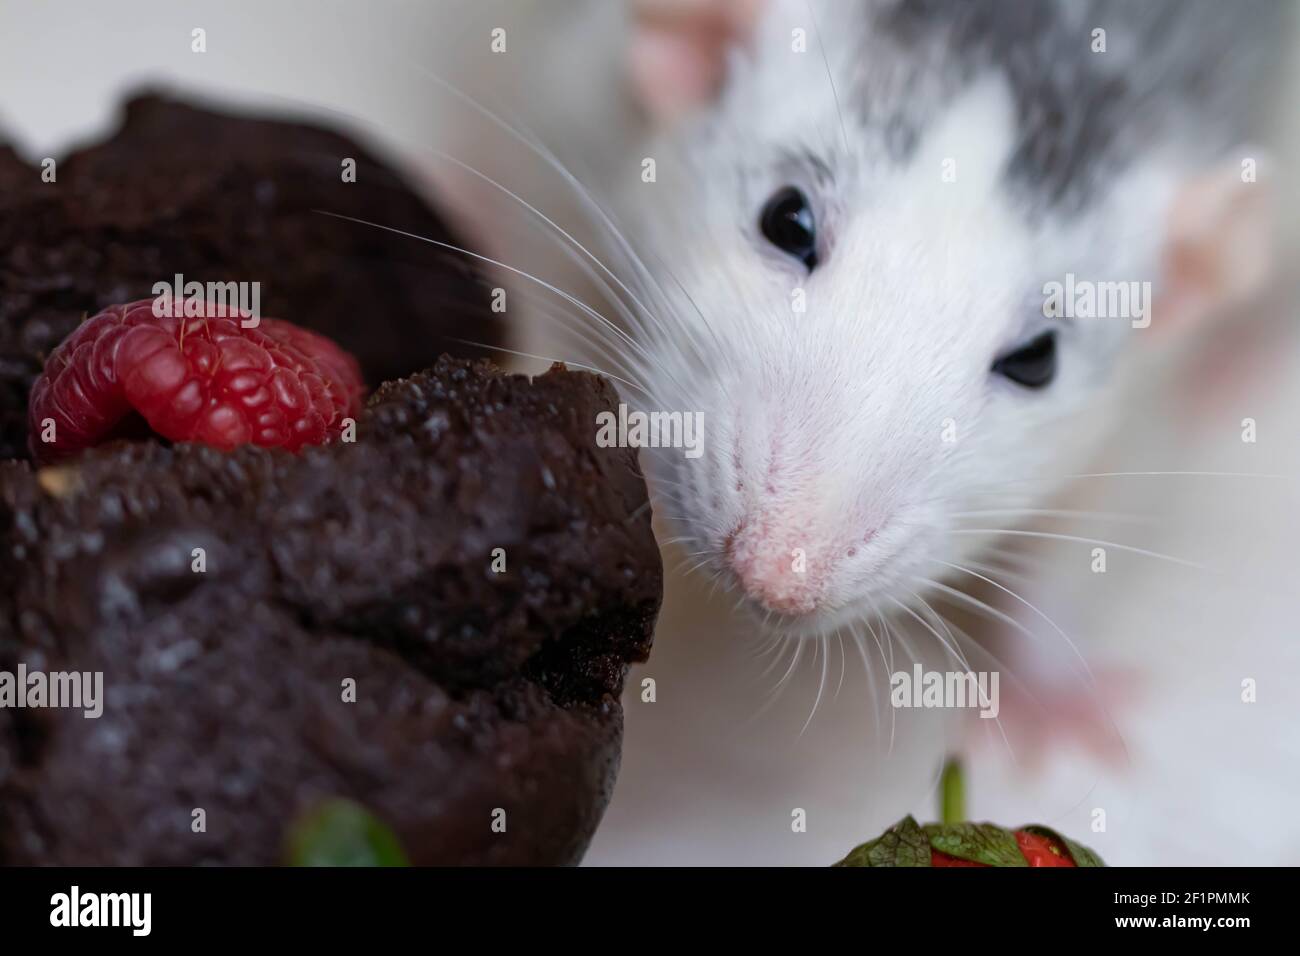 Un mignon et drôle de décoration blanc gris raies et veut manger un délicieux cupcake cuit ou muffin. Des fraises juteuses et des bleuets se trouvent à proximité. Banque D'Images